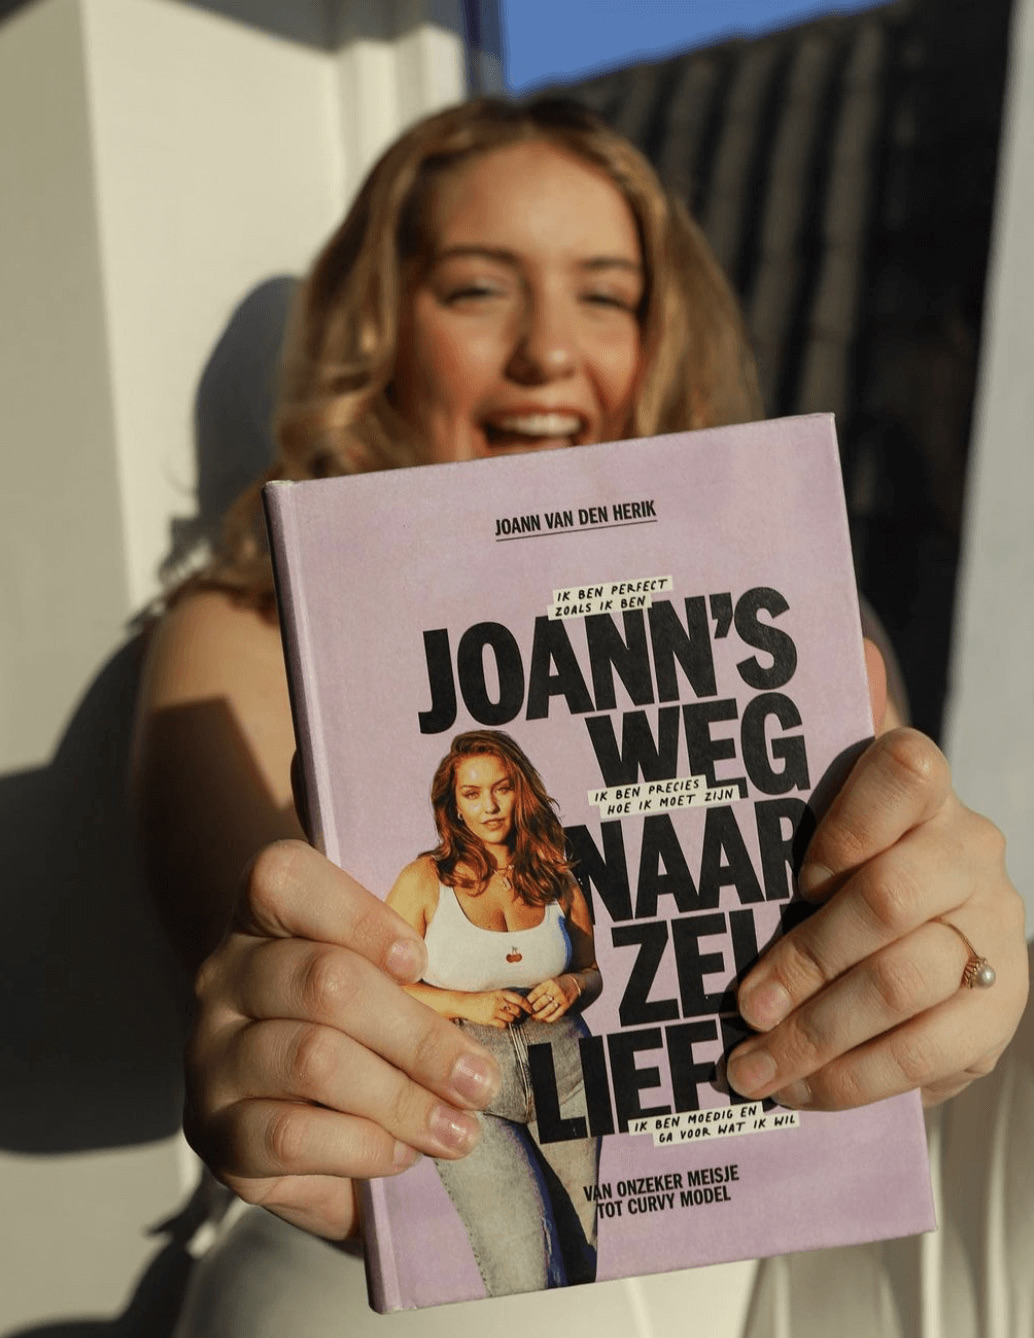 Body positivity model Joann van den Herik: “De wereld is mooier met zelfliefde en positiviteit”